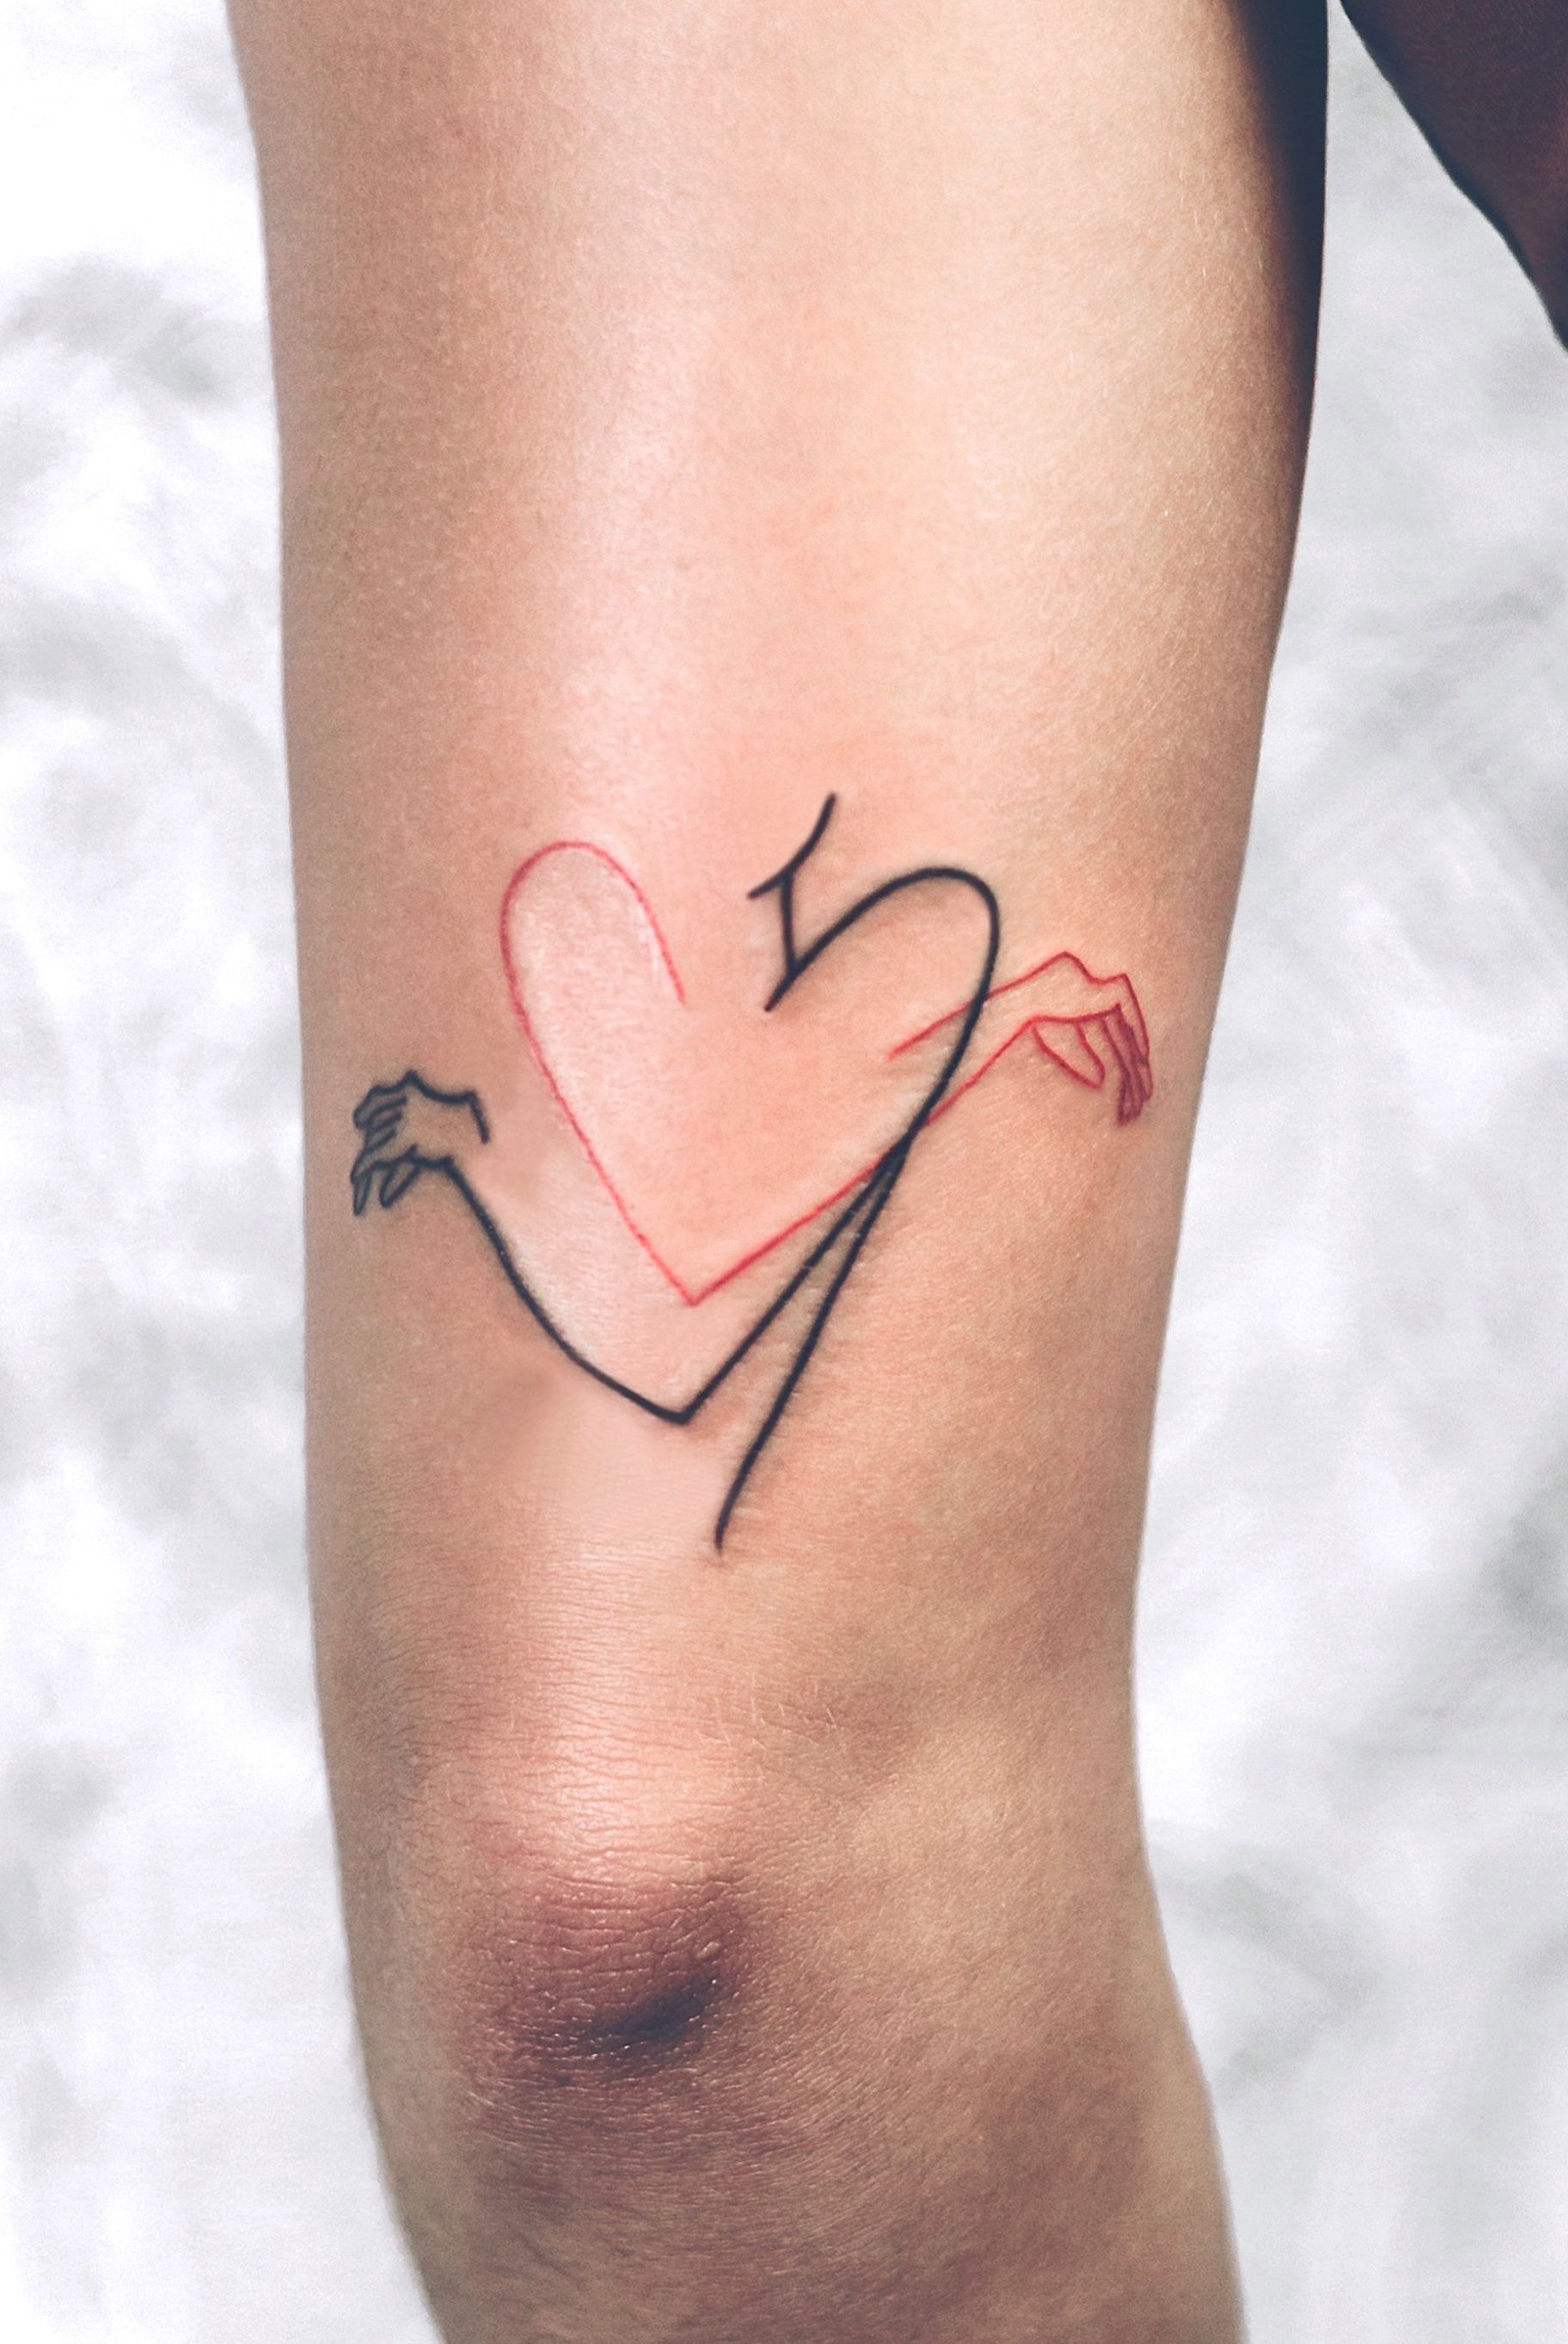 Self hug Tattoo  Self love tattoo Earthy tattoos Intimate tattoos